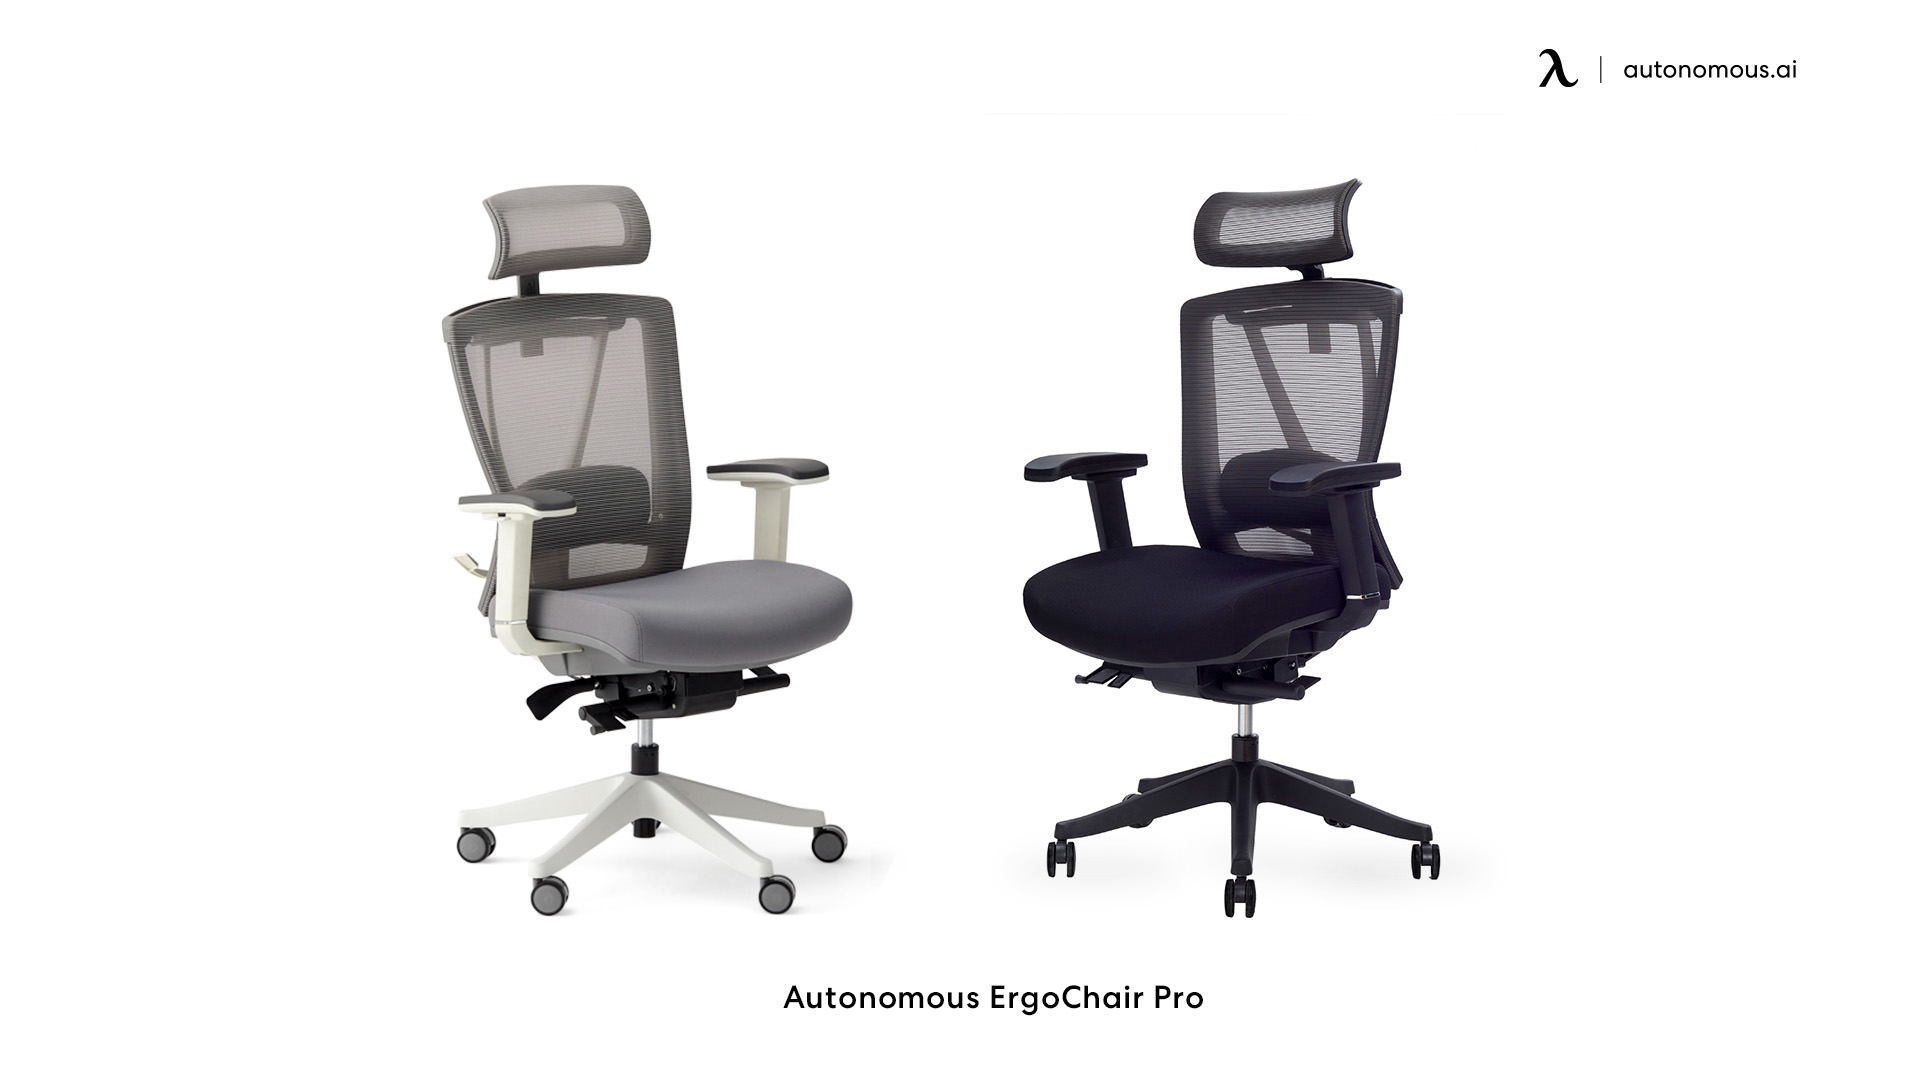 ErgoChair Pro comfortable home office chair